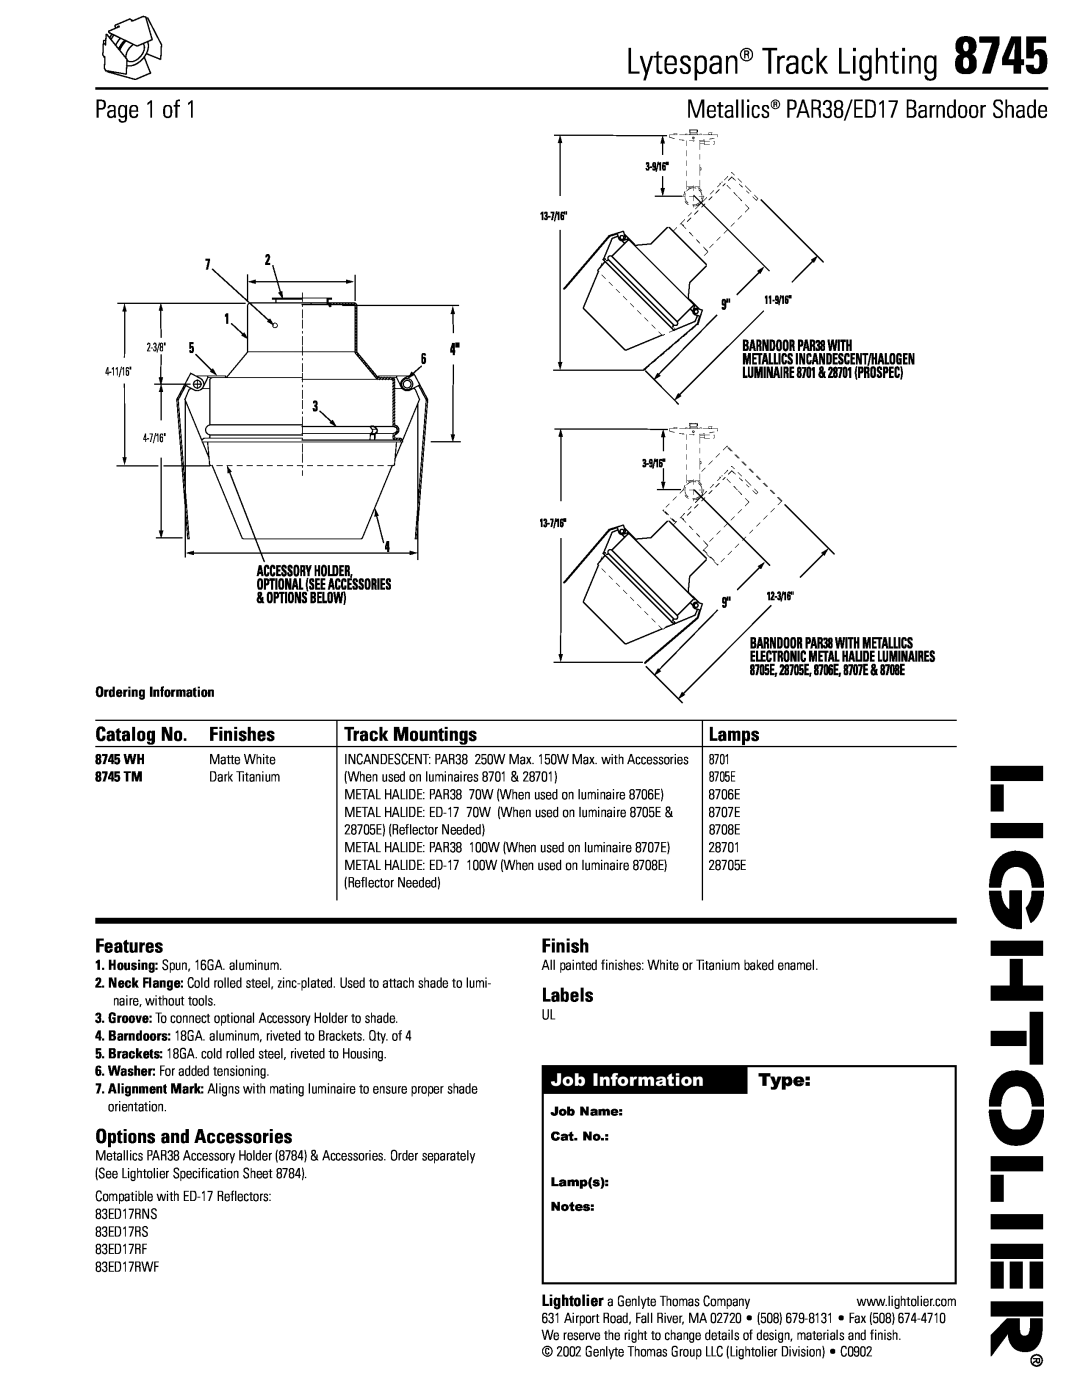 Lightolier 8745 specifications Lytespan Track Lighting, Page 1 of, Metallics PAR38/ED17 Barndoor Shade, Catalog No, Lamps 